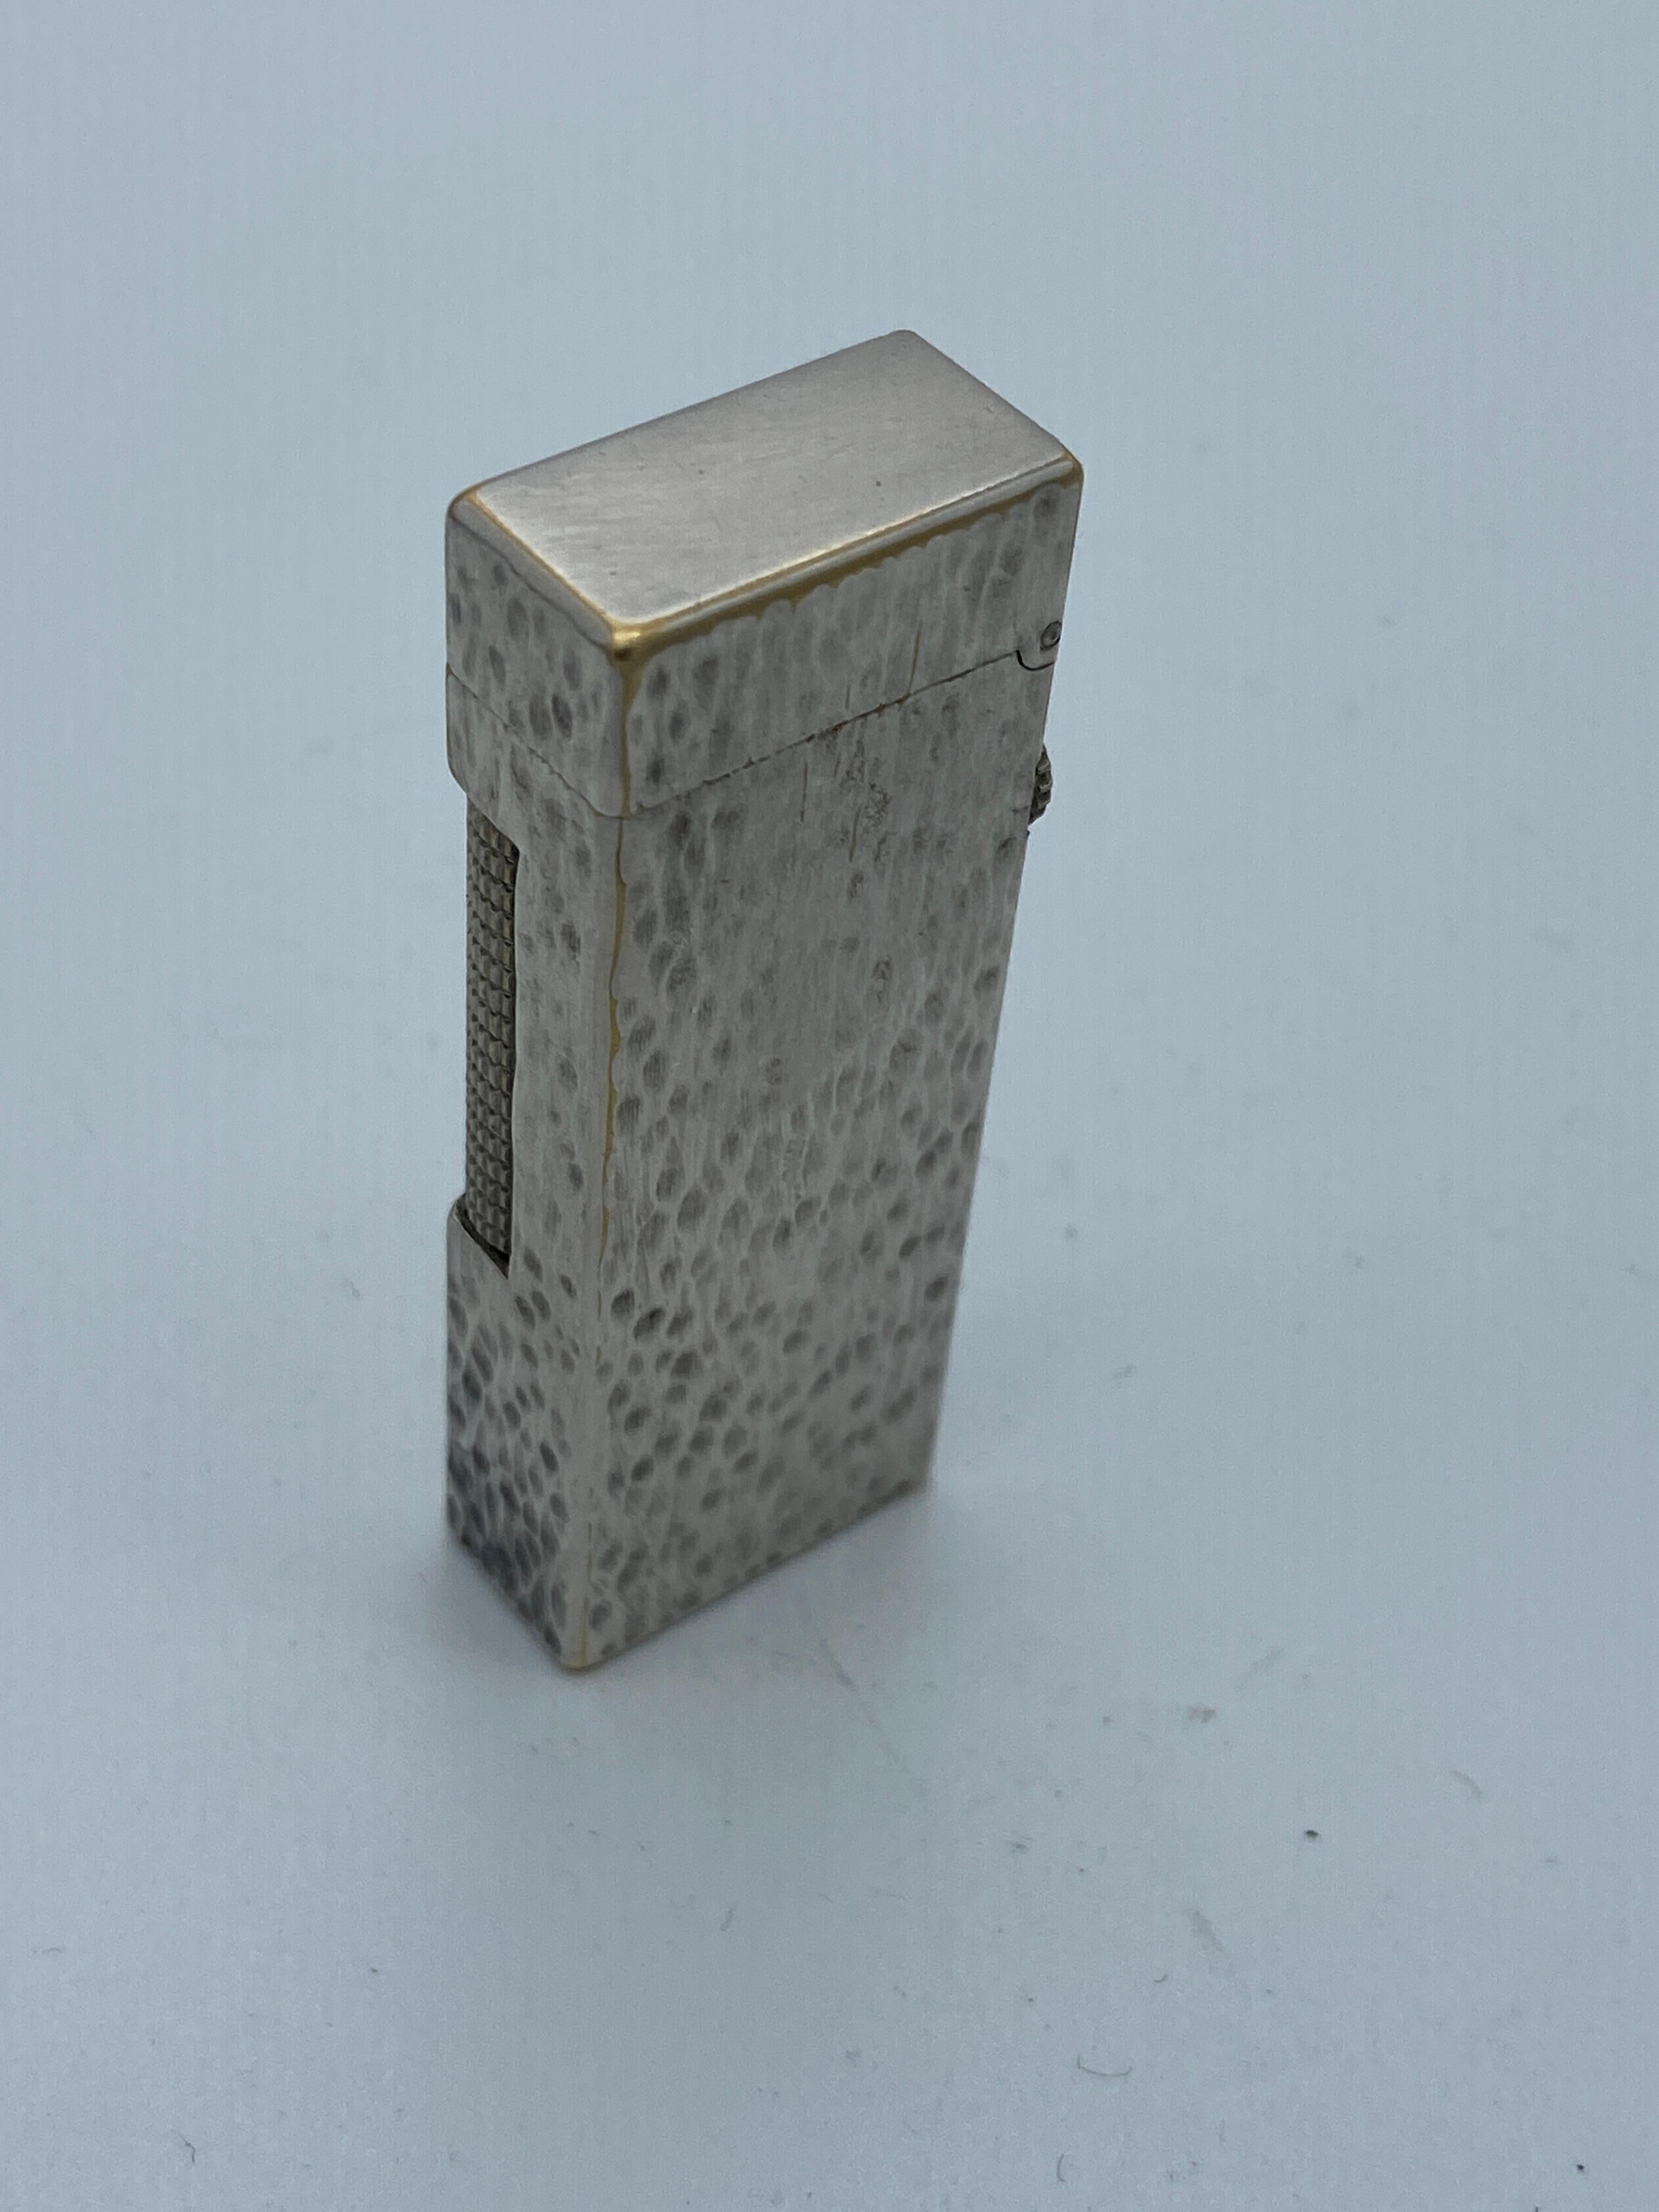 Vintage 1960er Dunhill Rollagas Taschenfeuerzeug aus Silberblech mit strukturierter Oberfläche.

Gestempelt: 